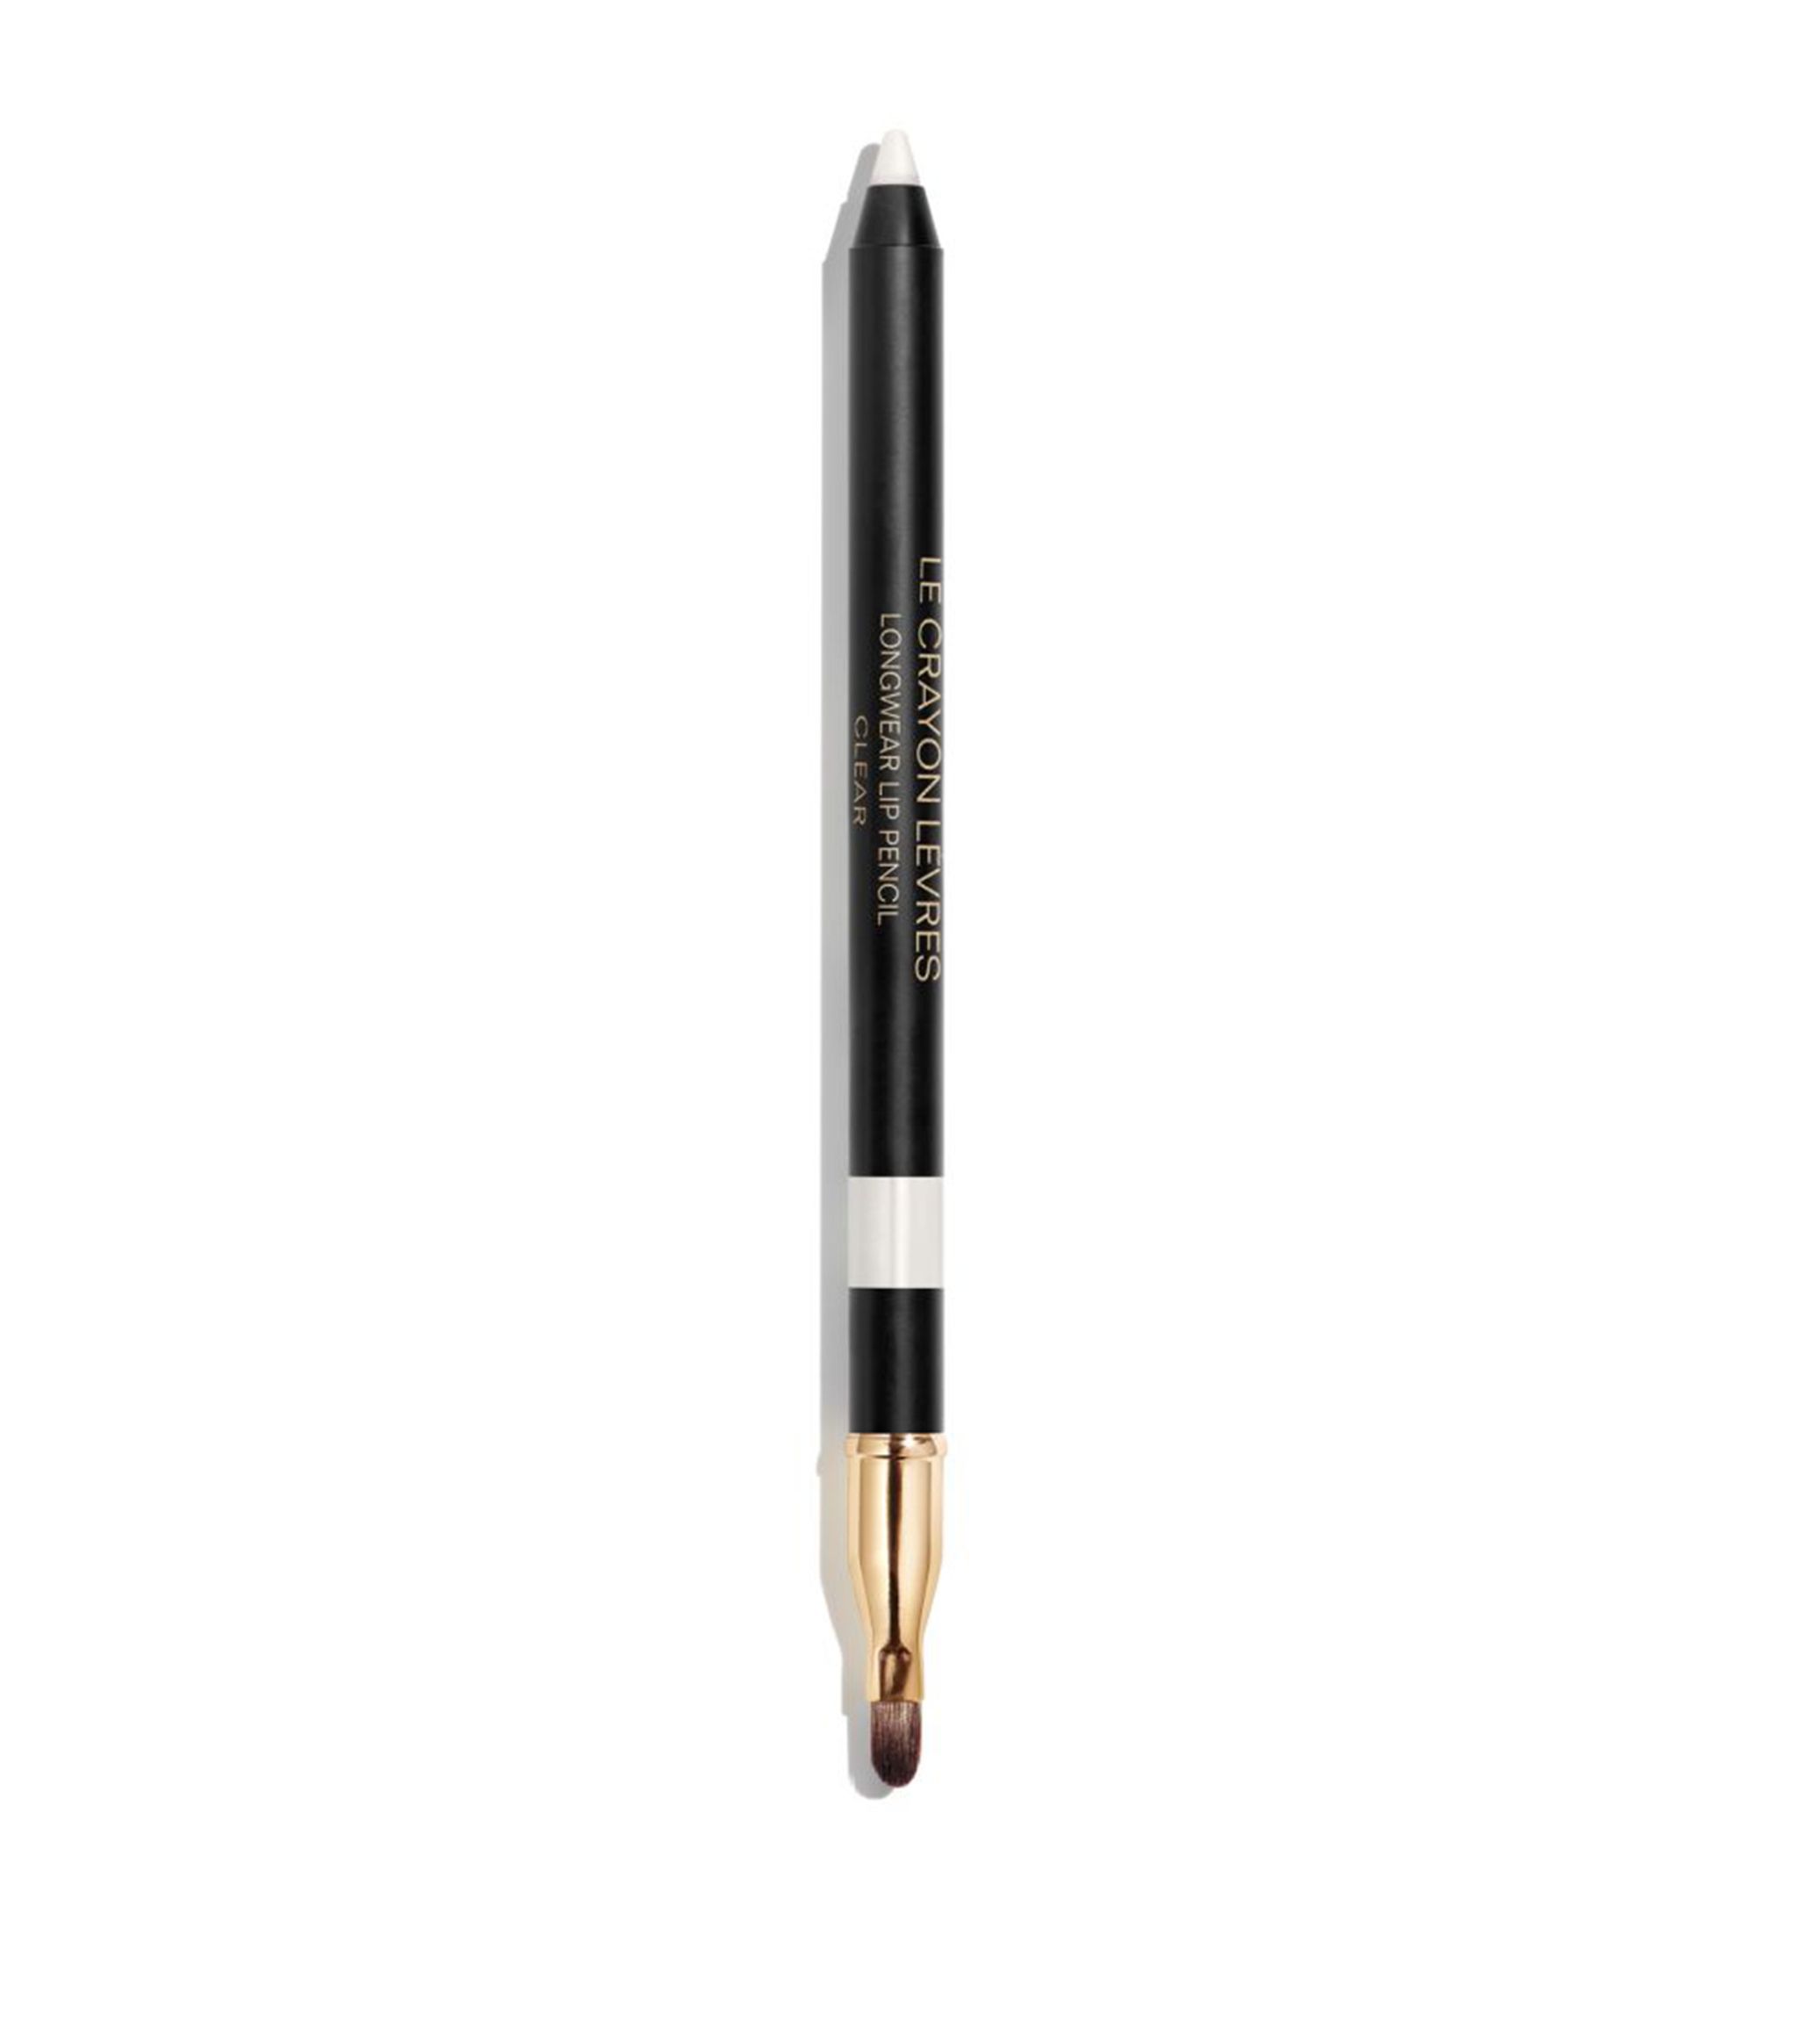 Chanel Dlouhotrvající tužka na rty (Longwear Lip Pencil) 1,2 g 154 Peachy Nude